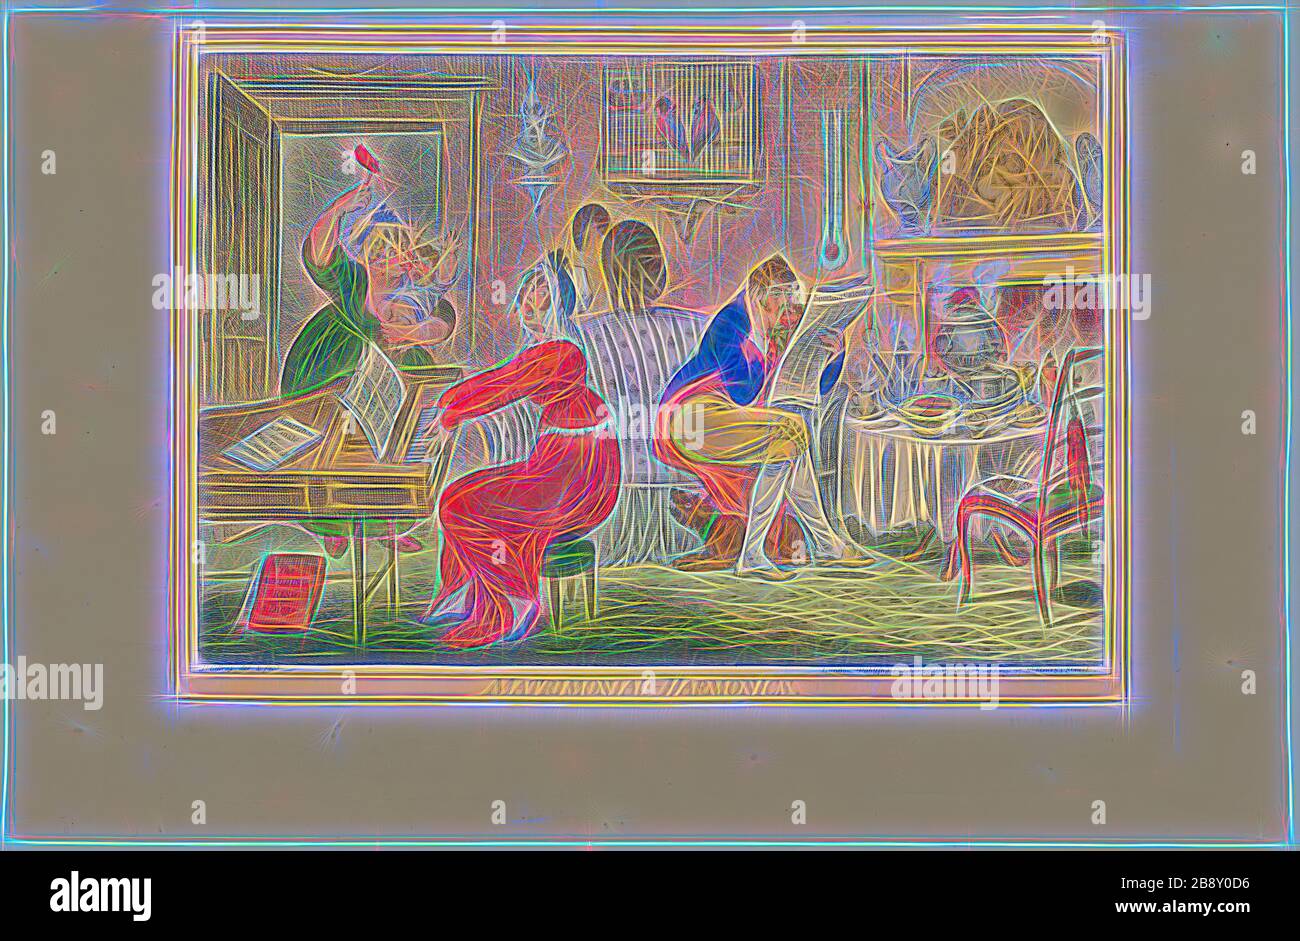 Matrimonial Harmonics (Recto), veröffentlicht am 25. Oktober 1805, James Gillray (Englisch, 1756-1815), herausgegeben von Hannah Humphrey (Englisch, ca. 1745-186), England, handfarbige Radierung auf Papier, 254 × 360 mm (Bild), 295 × 361 mm (Platte), 314 × 484 mm (Blatt), von Gibon neu vorgestellt, Design von warmfröhlichem Leuchten von Helligkeit und Lichtstrahlen. Klassische Kunst mit moderner Note neu erfunden. Fotografie, inspiriert vom Futurismus, die dynamische Energie moderner Technologie, Bewegung, Geschwindigkeit und Kultur revolutionieren. Stockfoto